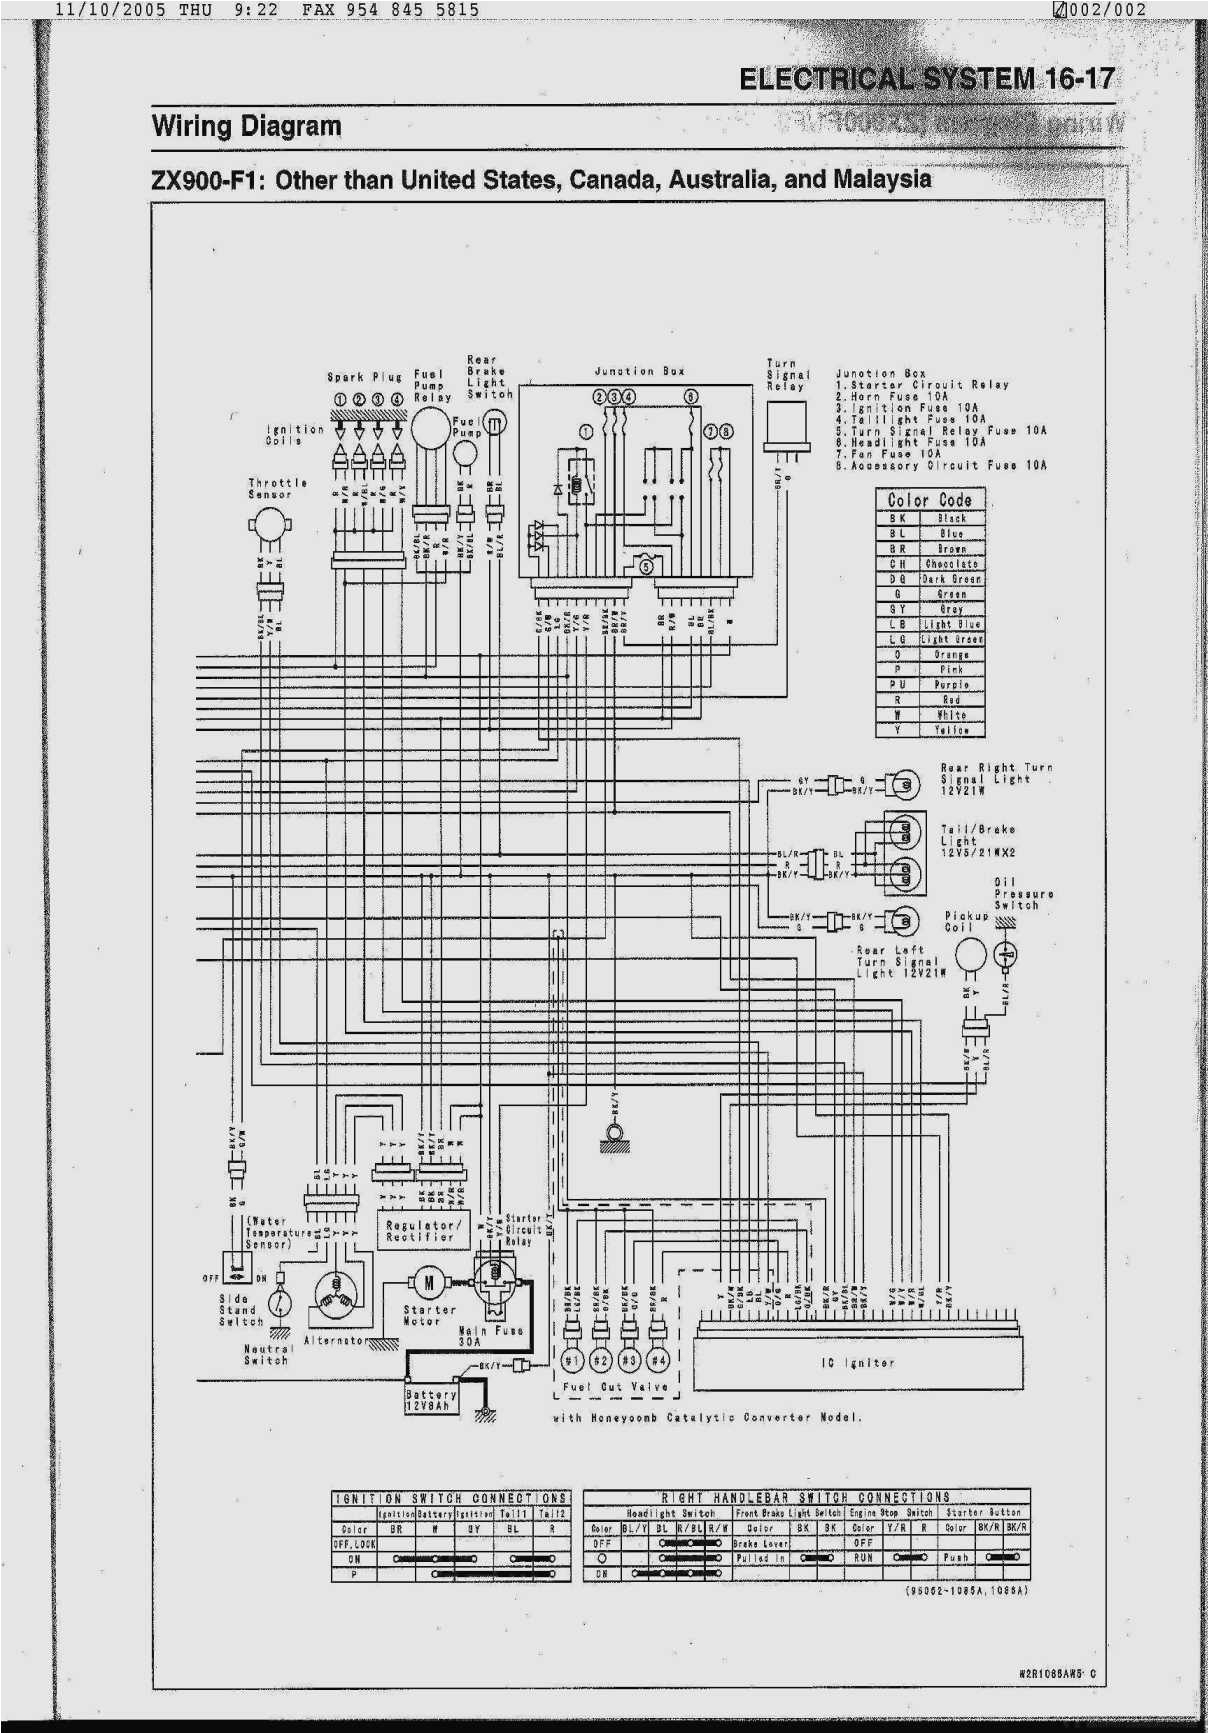 ug412rmw250p wiring diagram circuit diagram wiring diagram ug412rmw250p wiring diagram